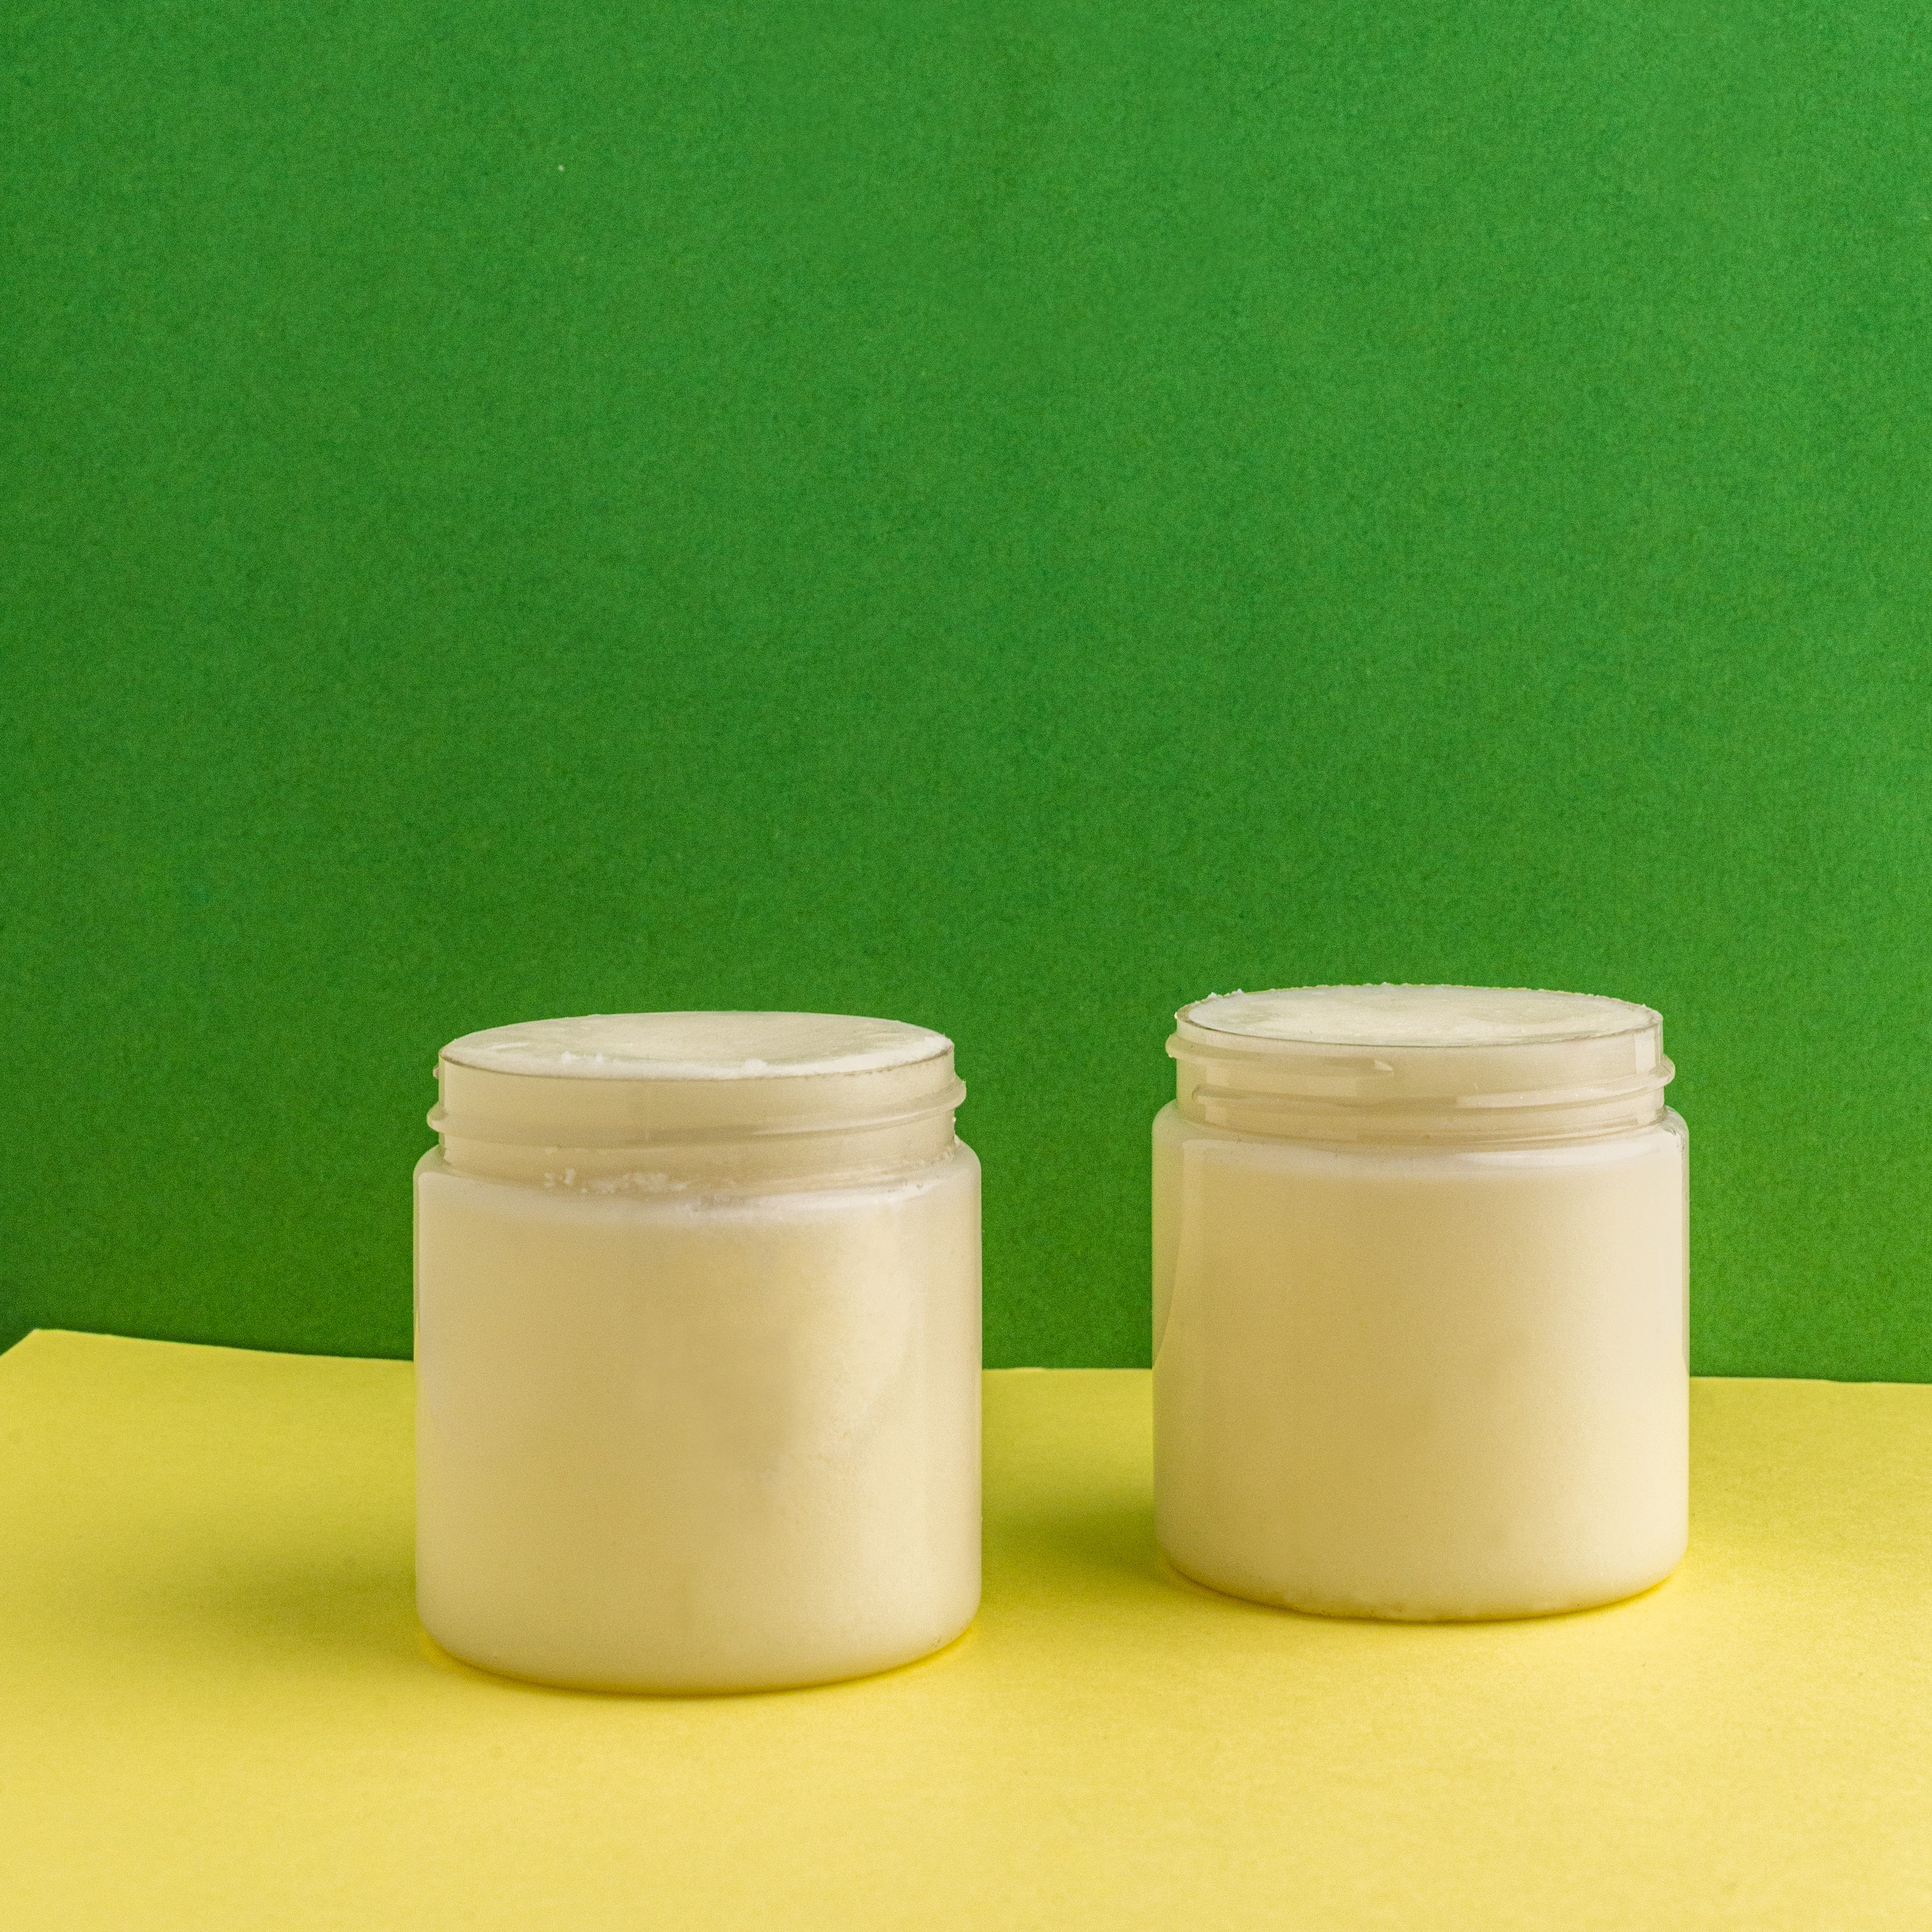 Body Butter Kit  Make Your Own Moisturiser Body Butter